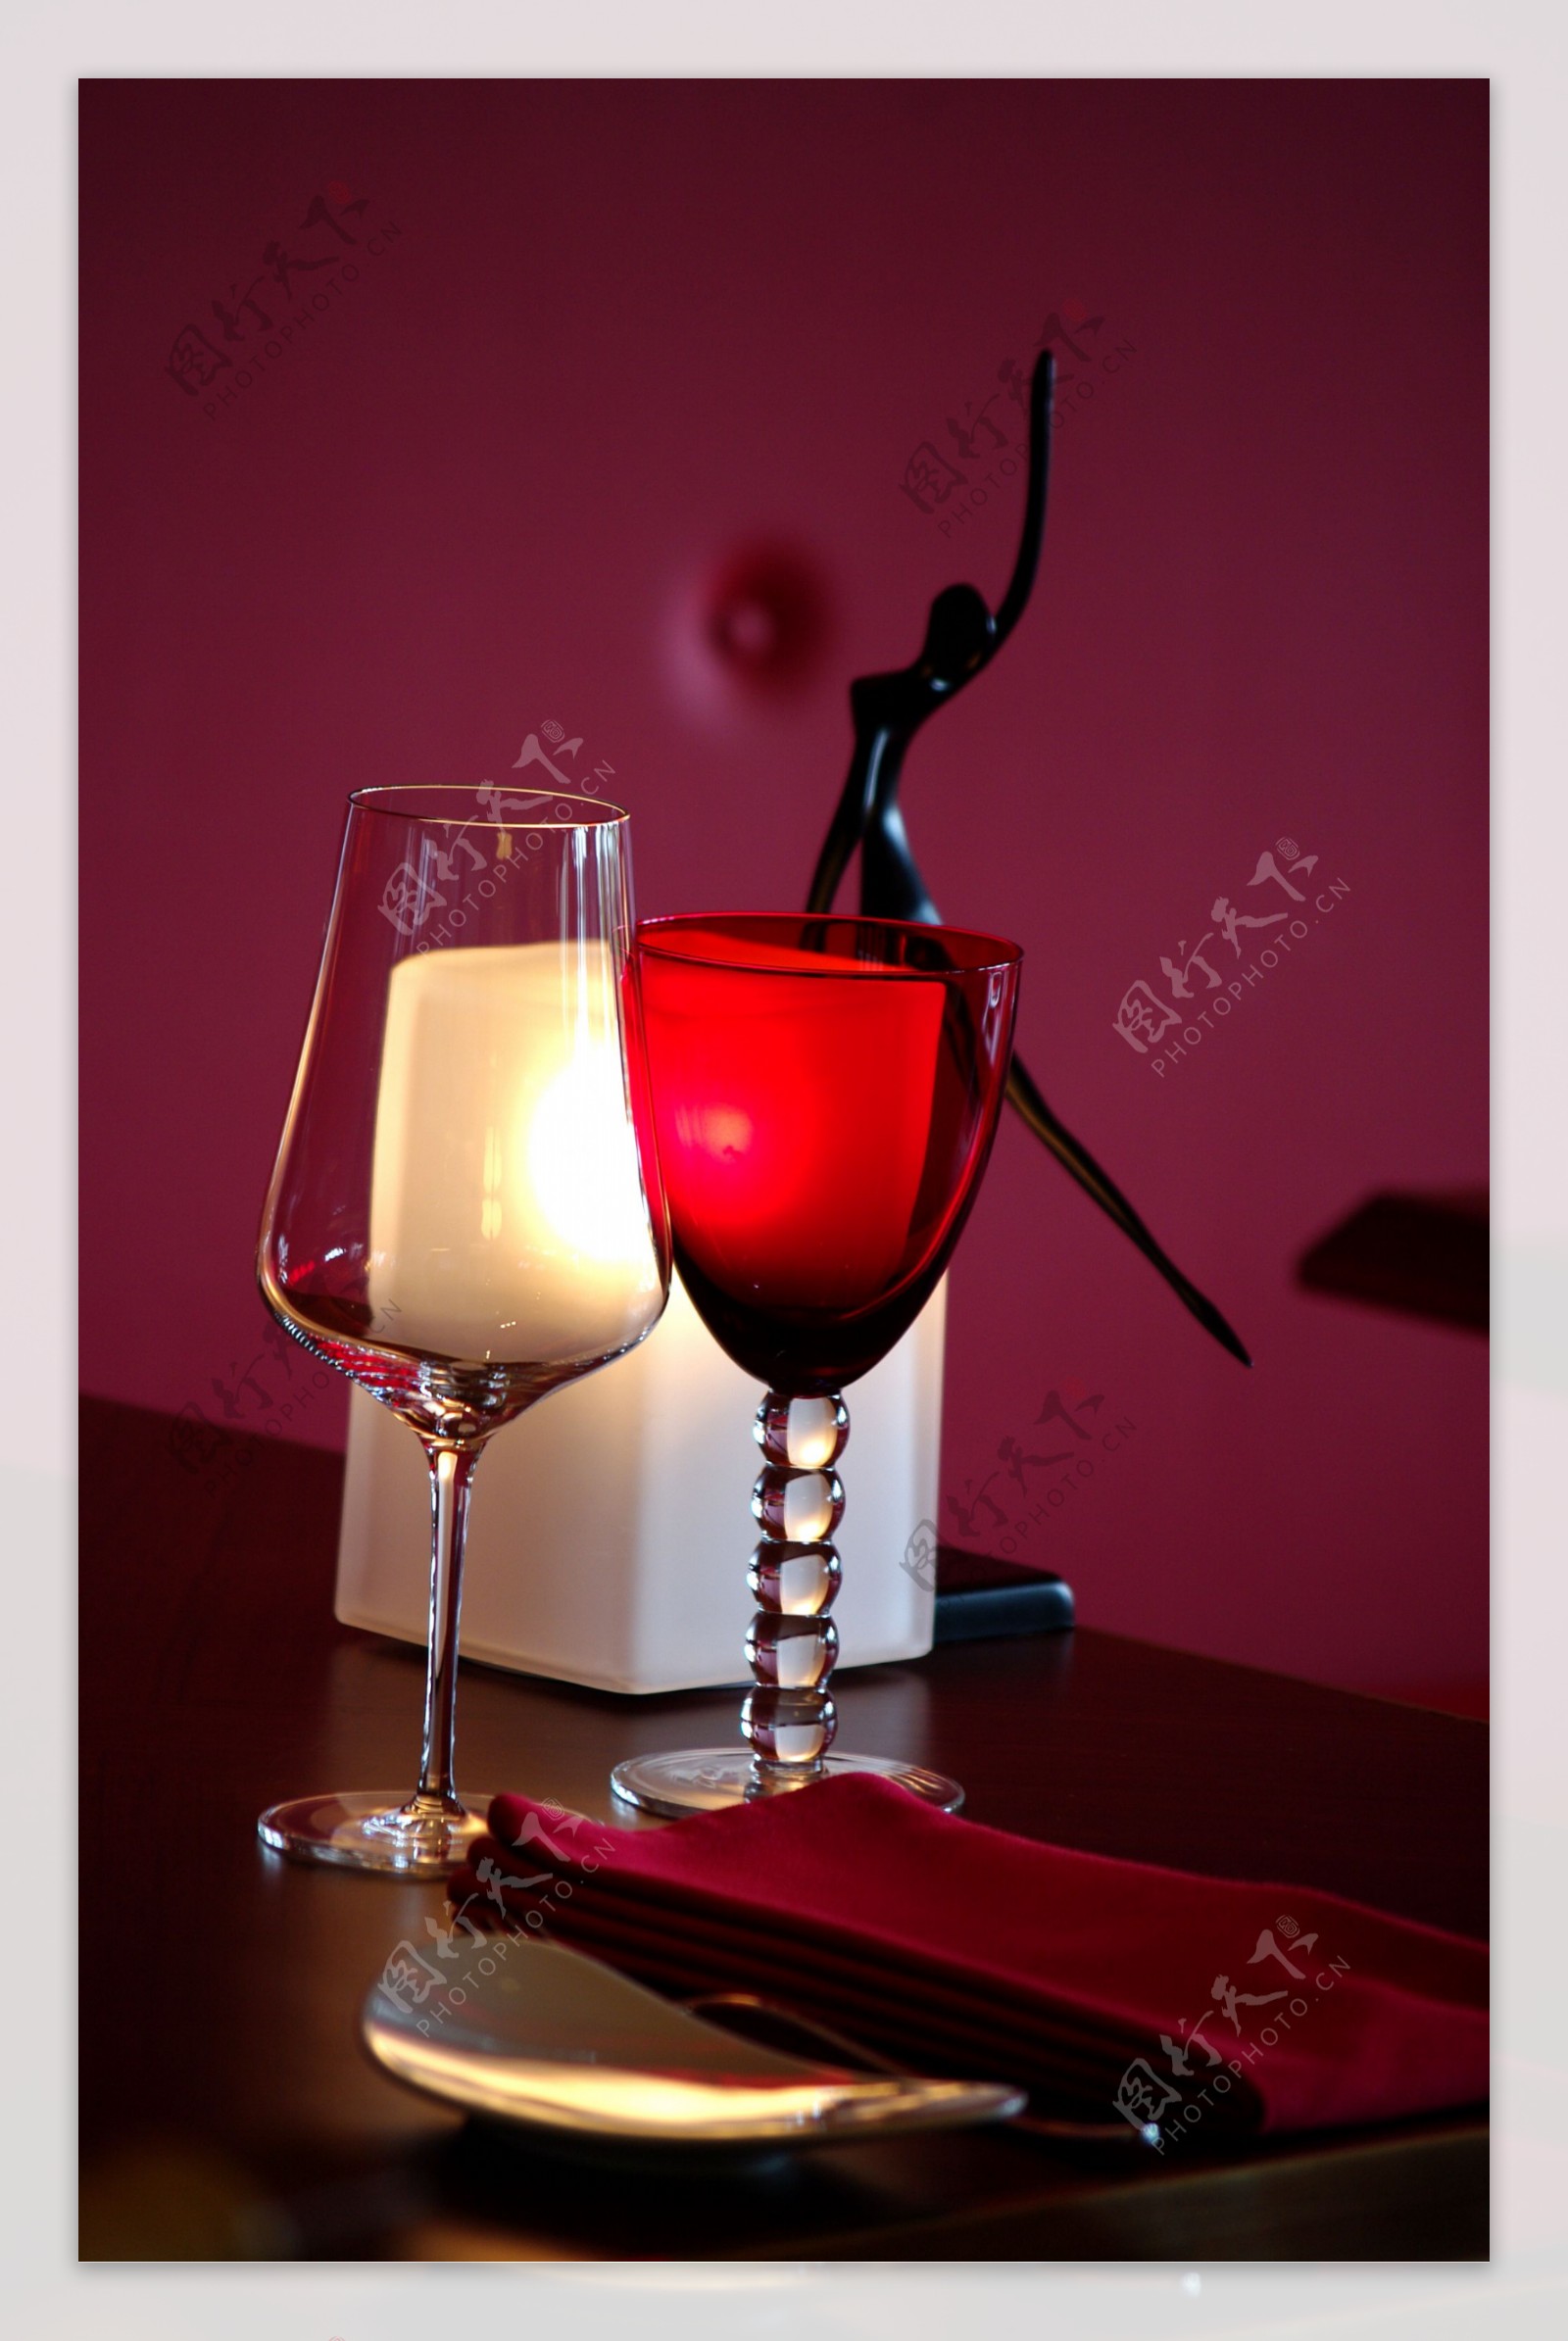 酒杯玻璃杯红酒艺术图片